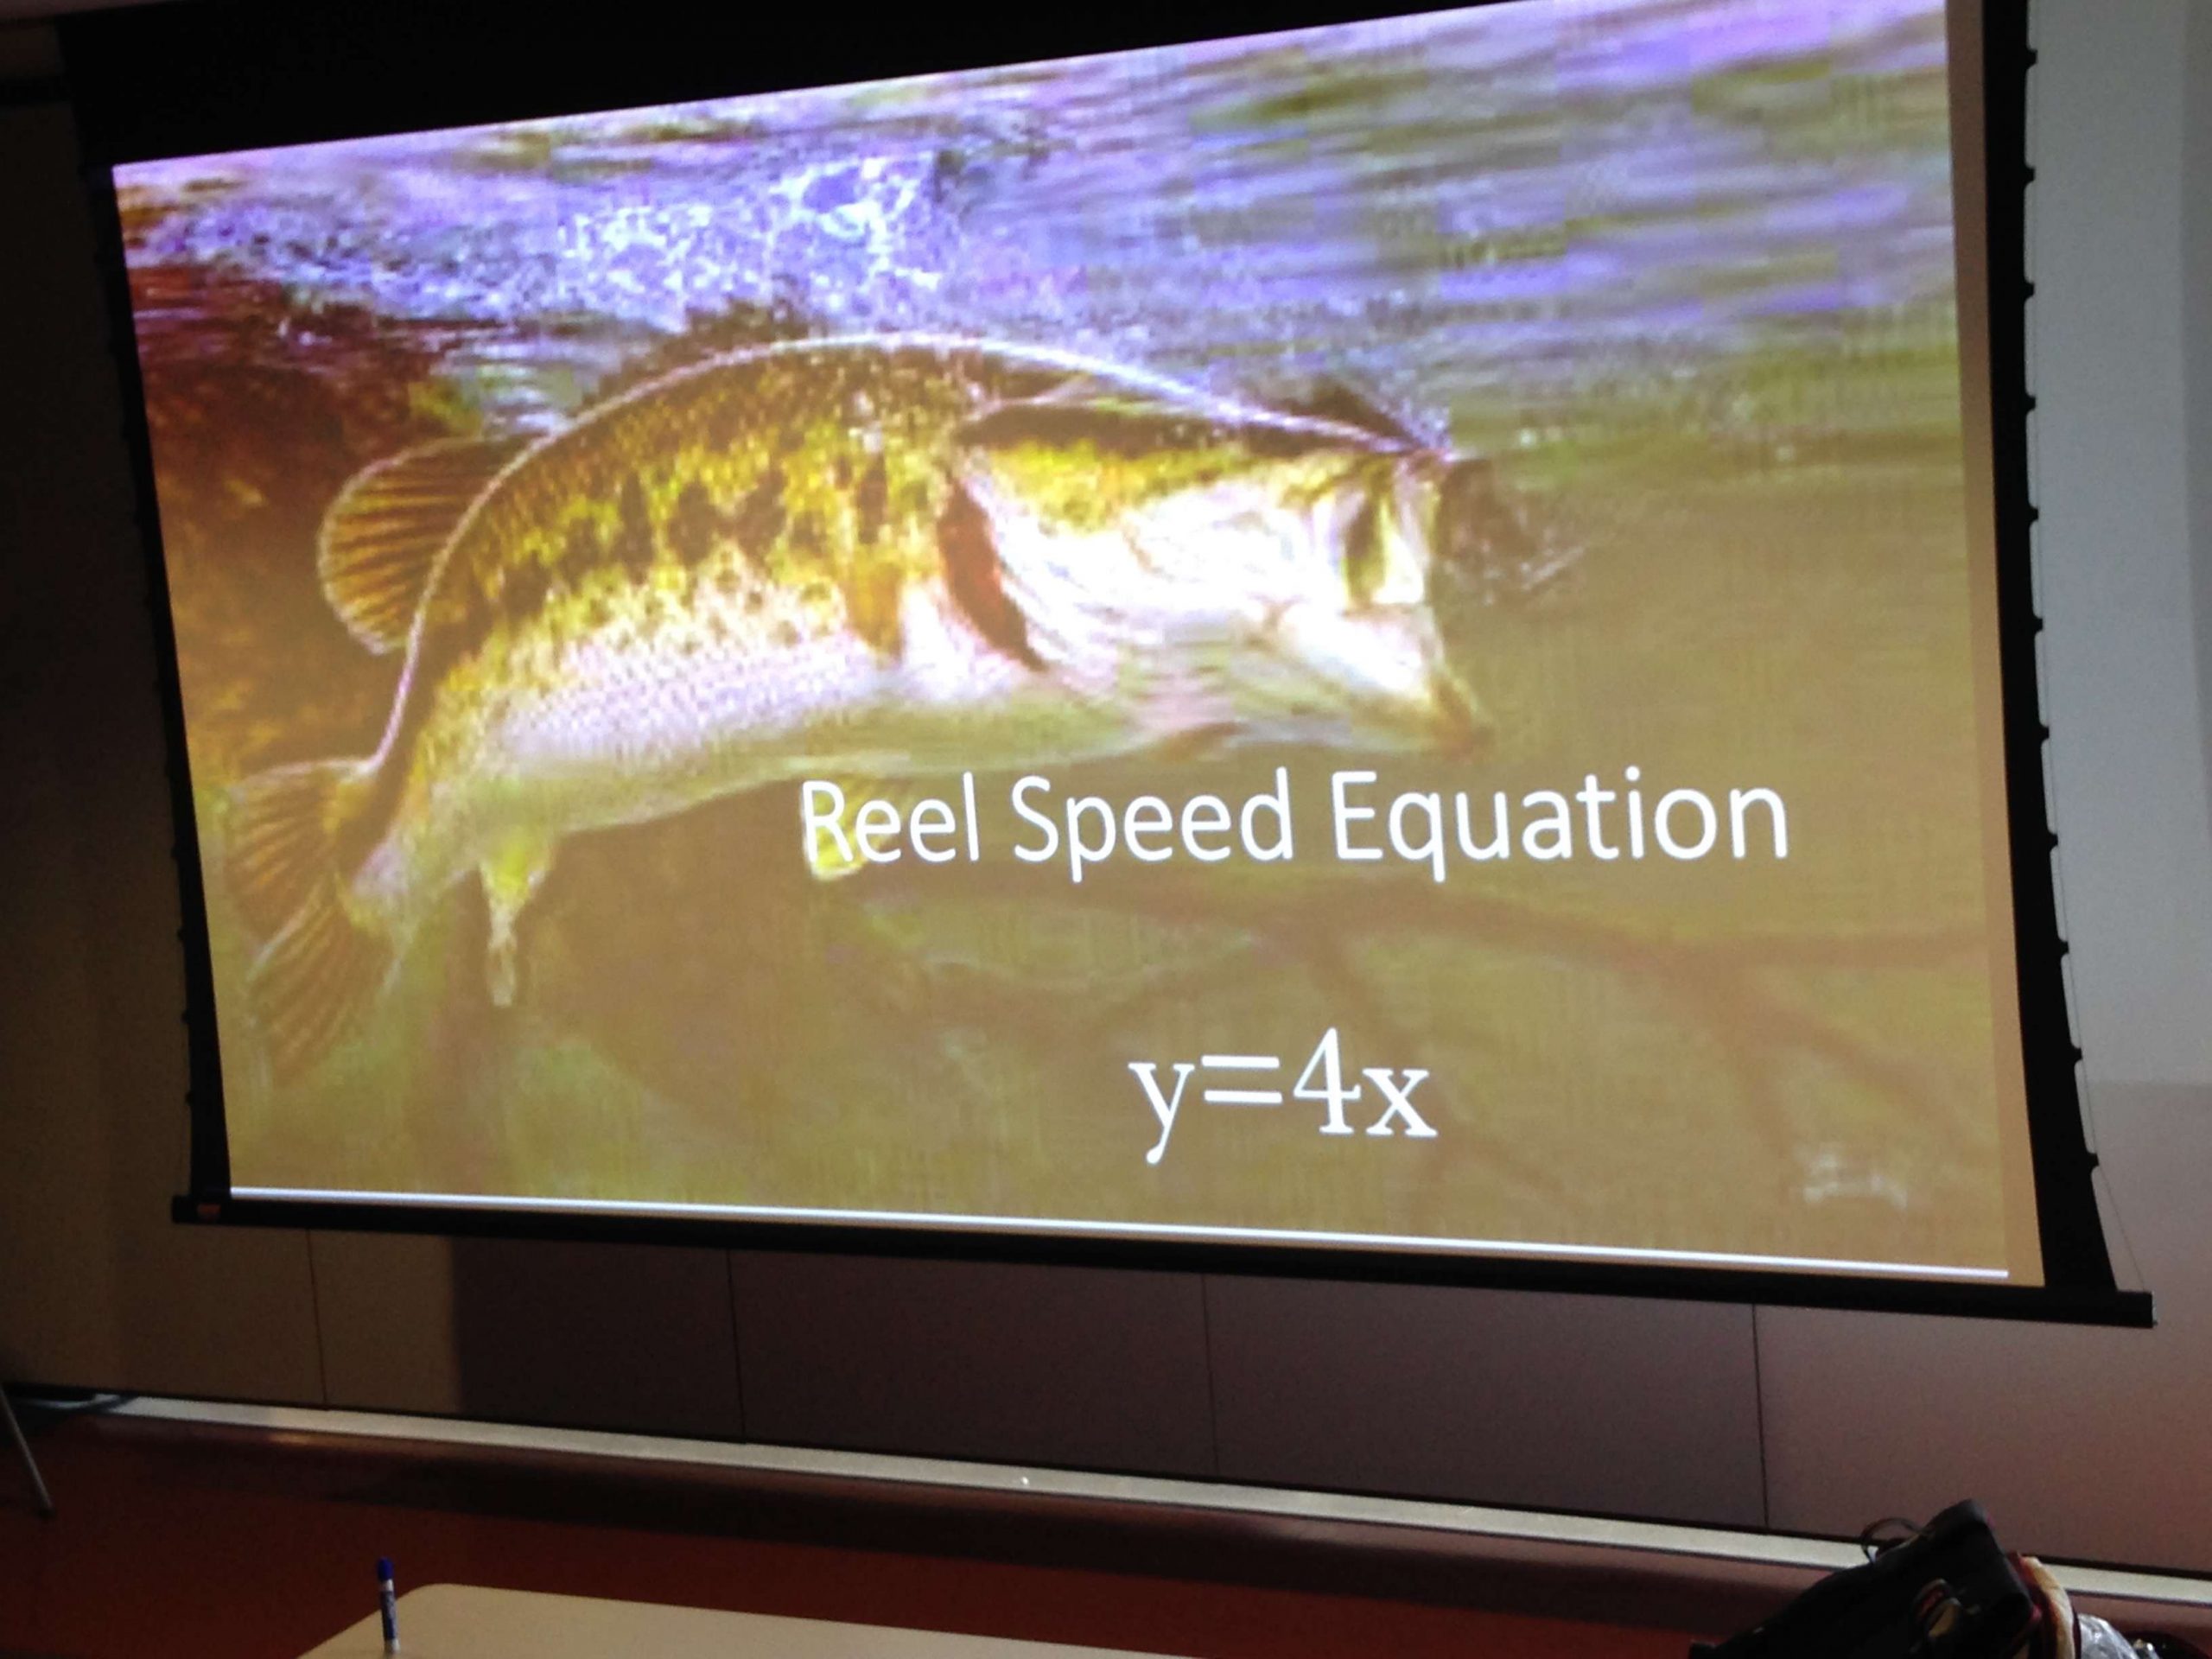 âComparing fishing to algebra makes it a lot easier to understand,â said one student.